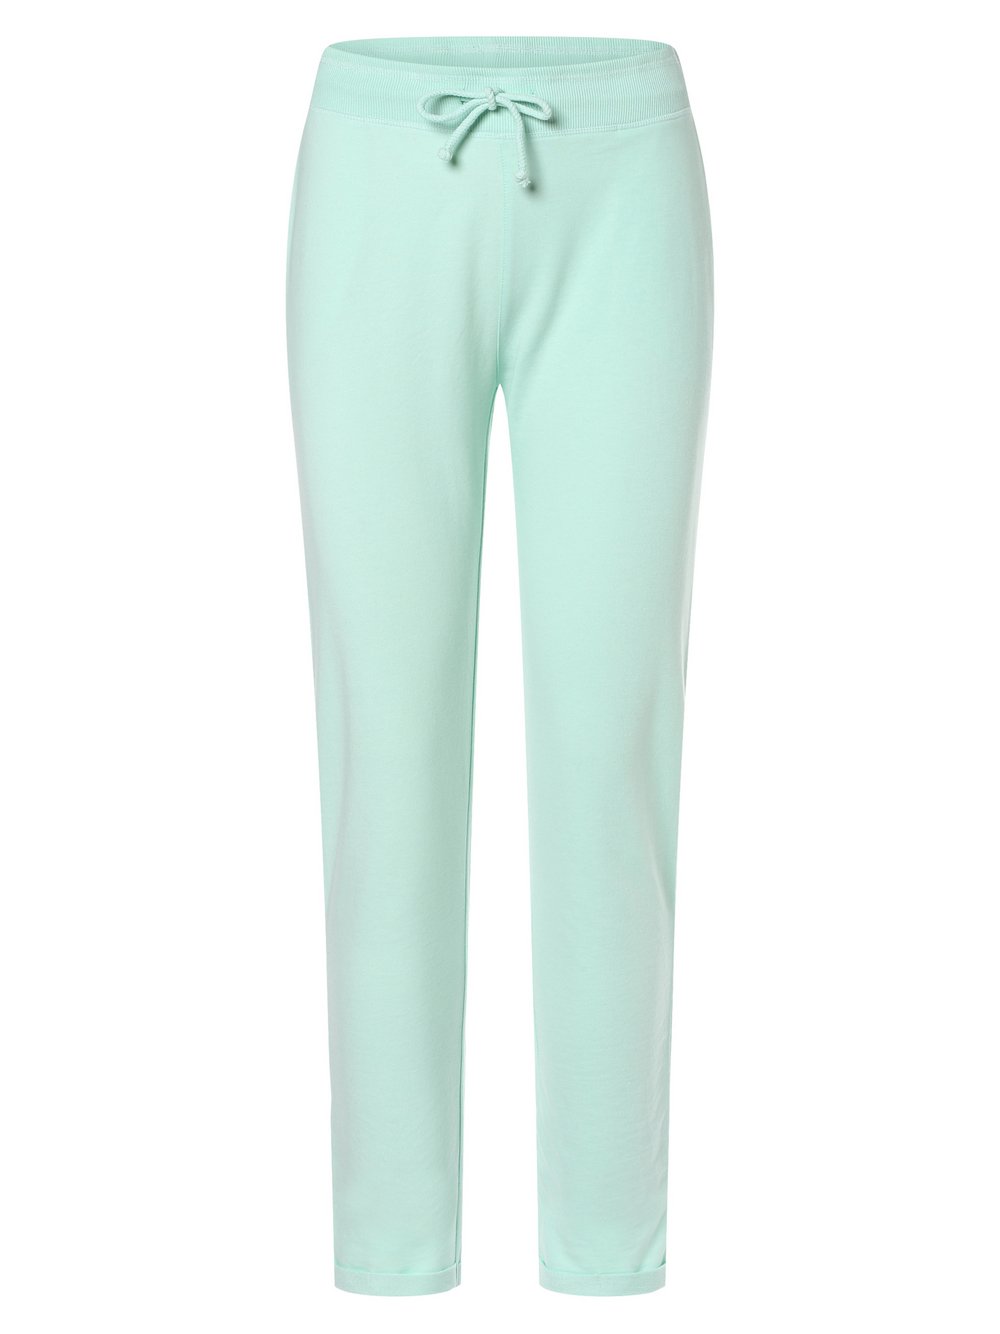 Marie Lund - Damskie spodnie dresowe, niebieski|zielony